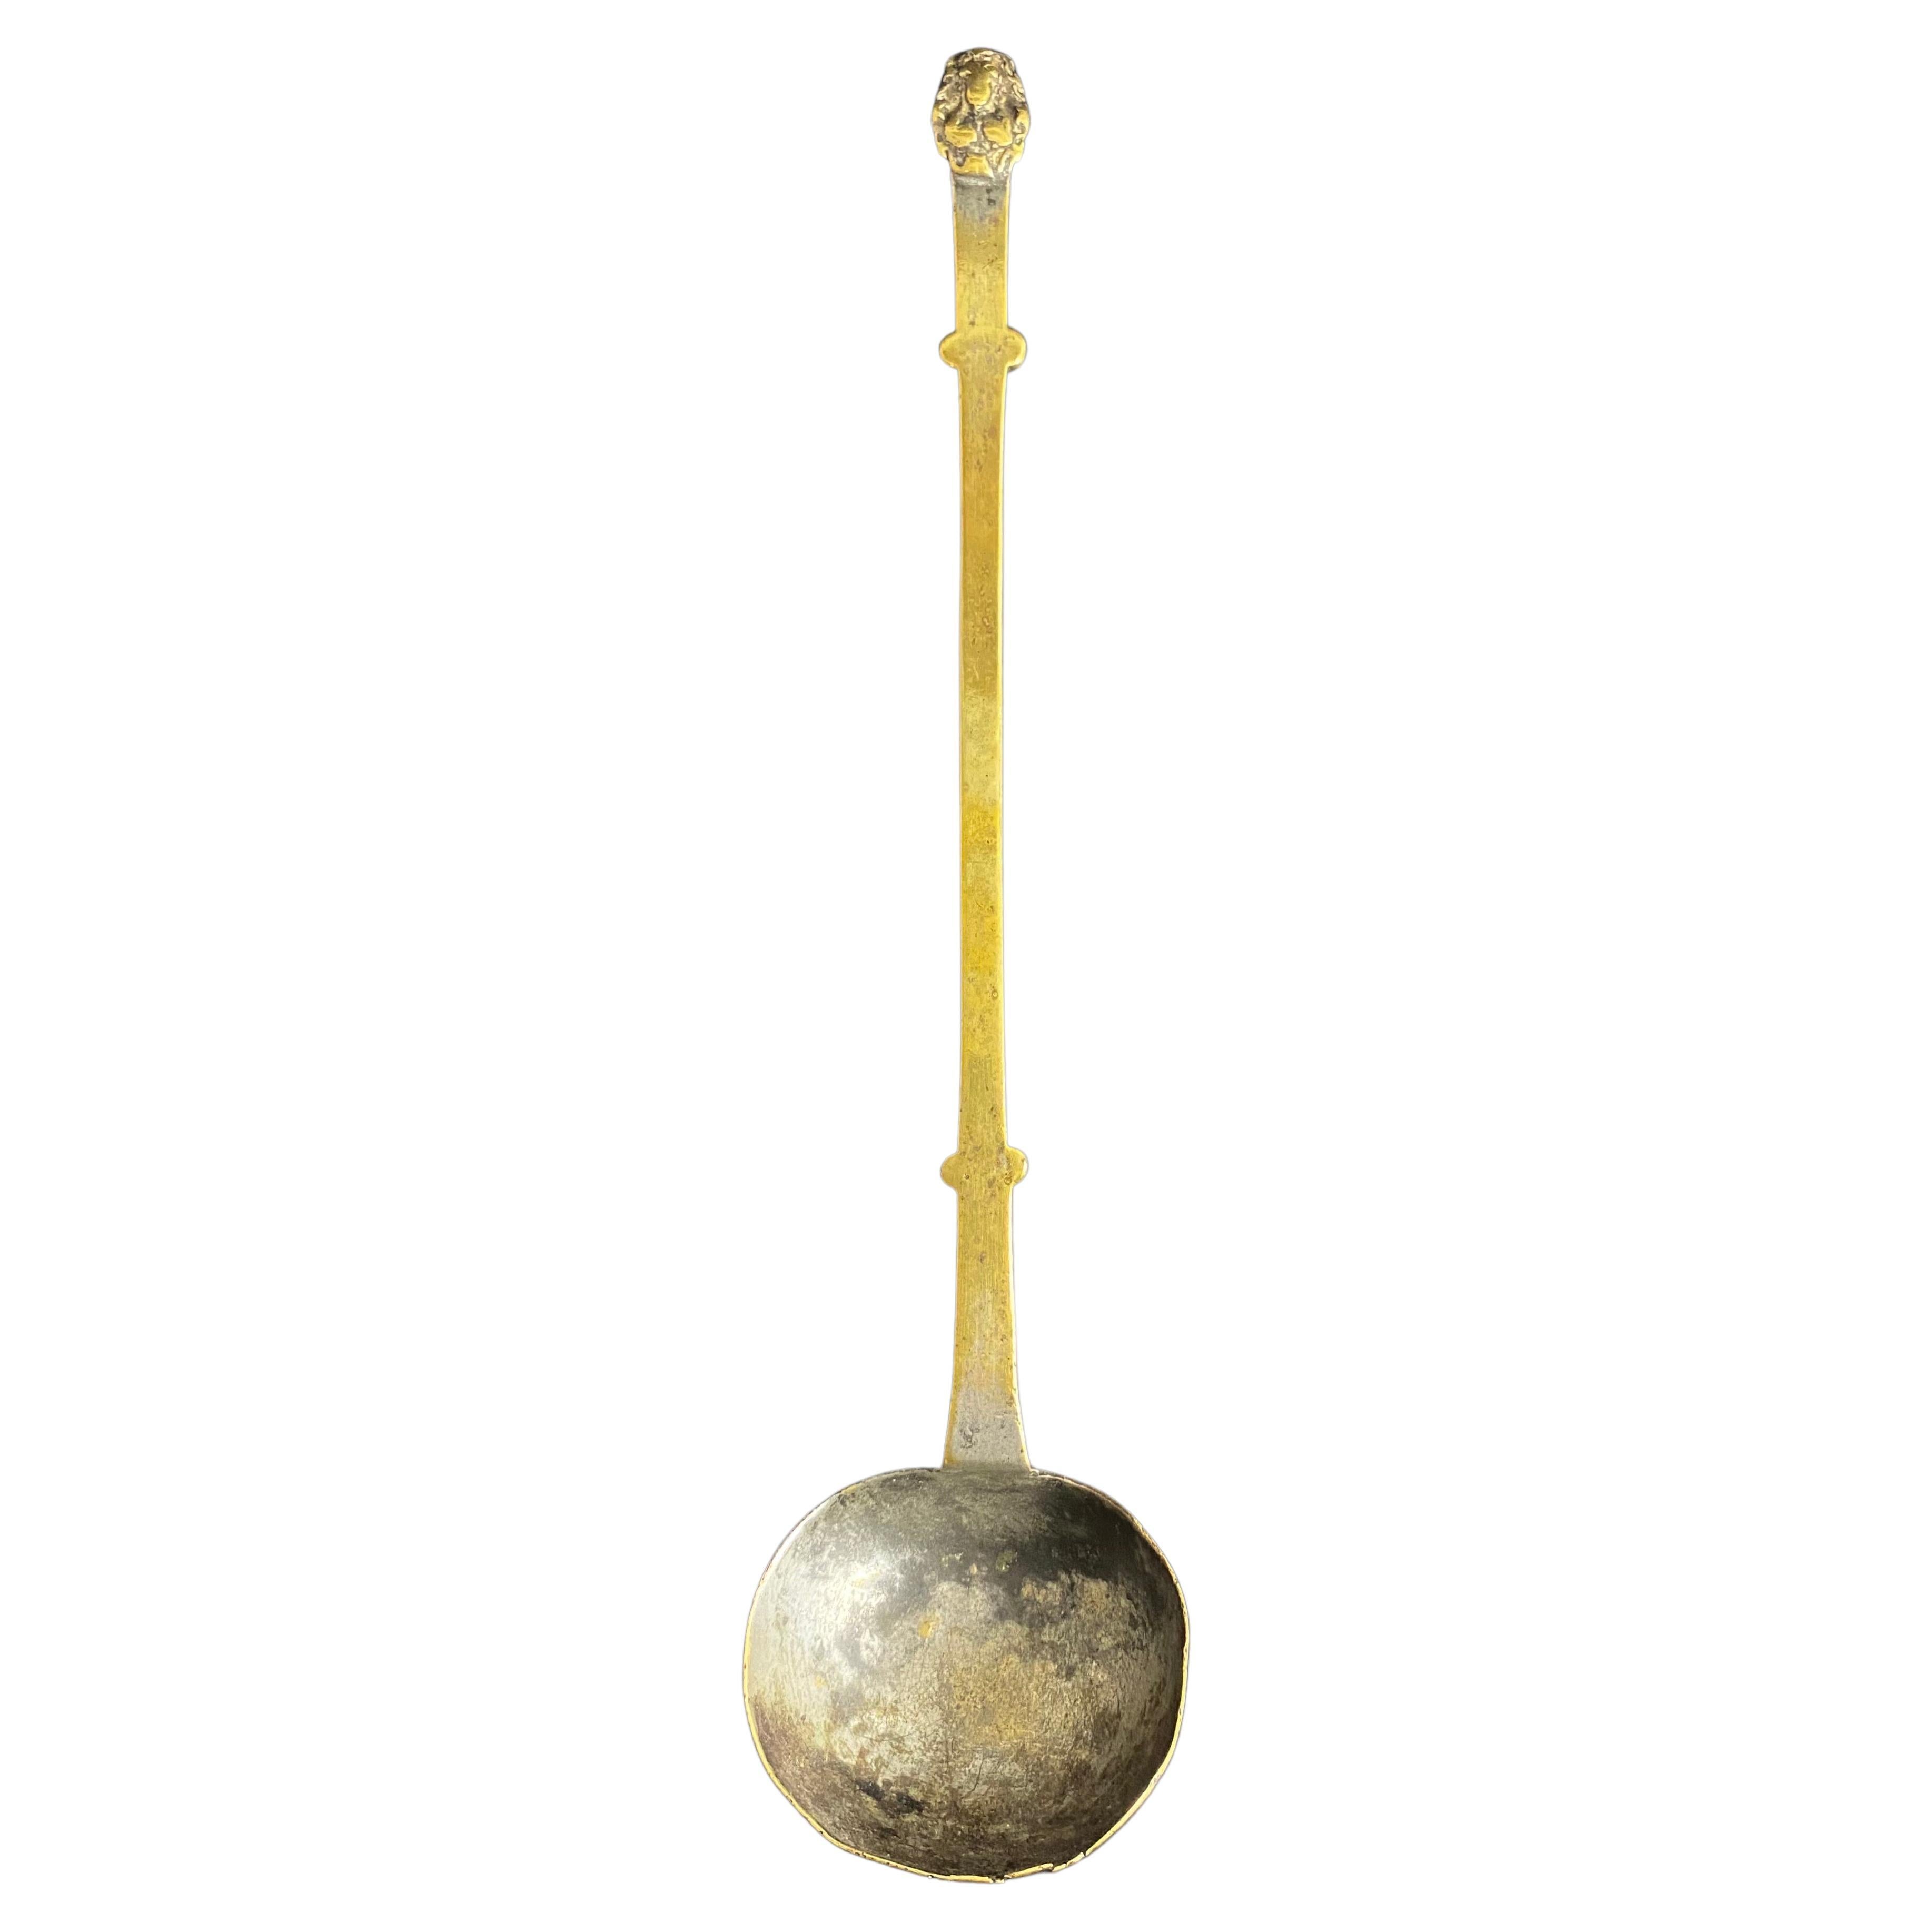 Haute Epoque bronze ladle - 17th century - France